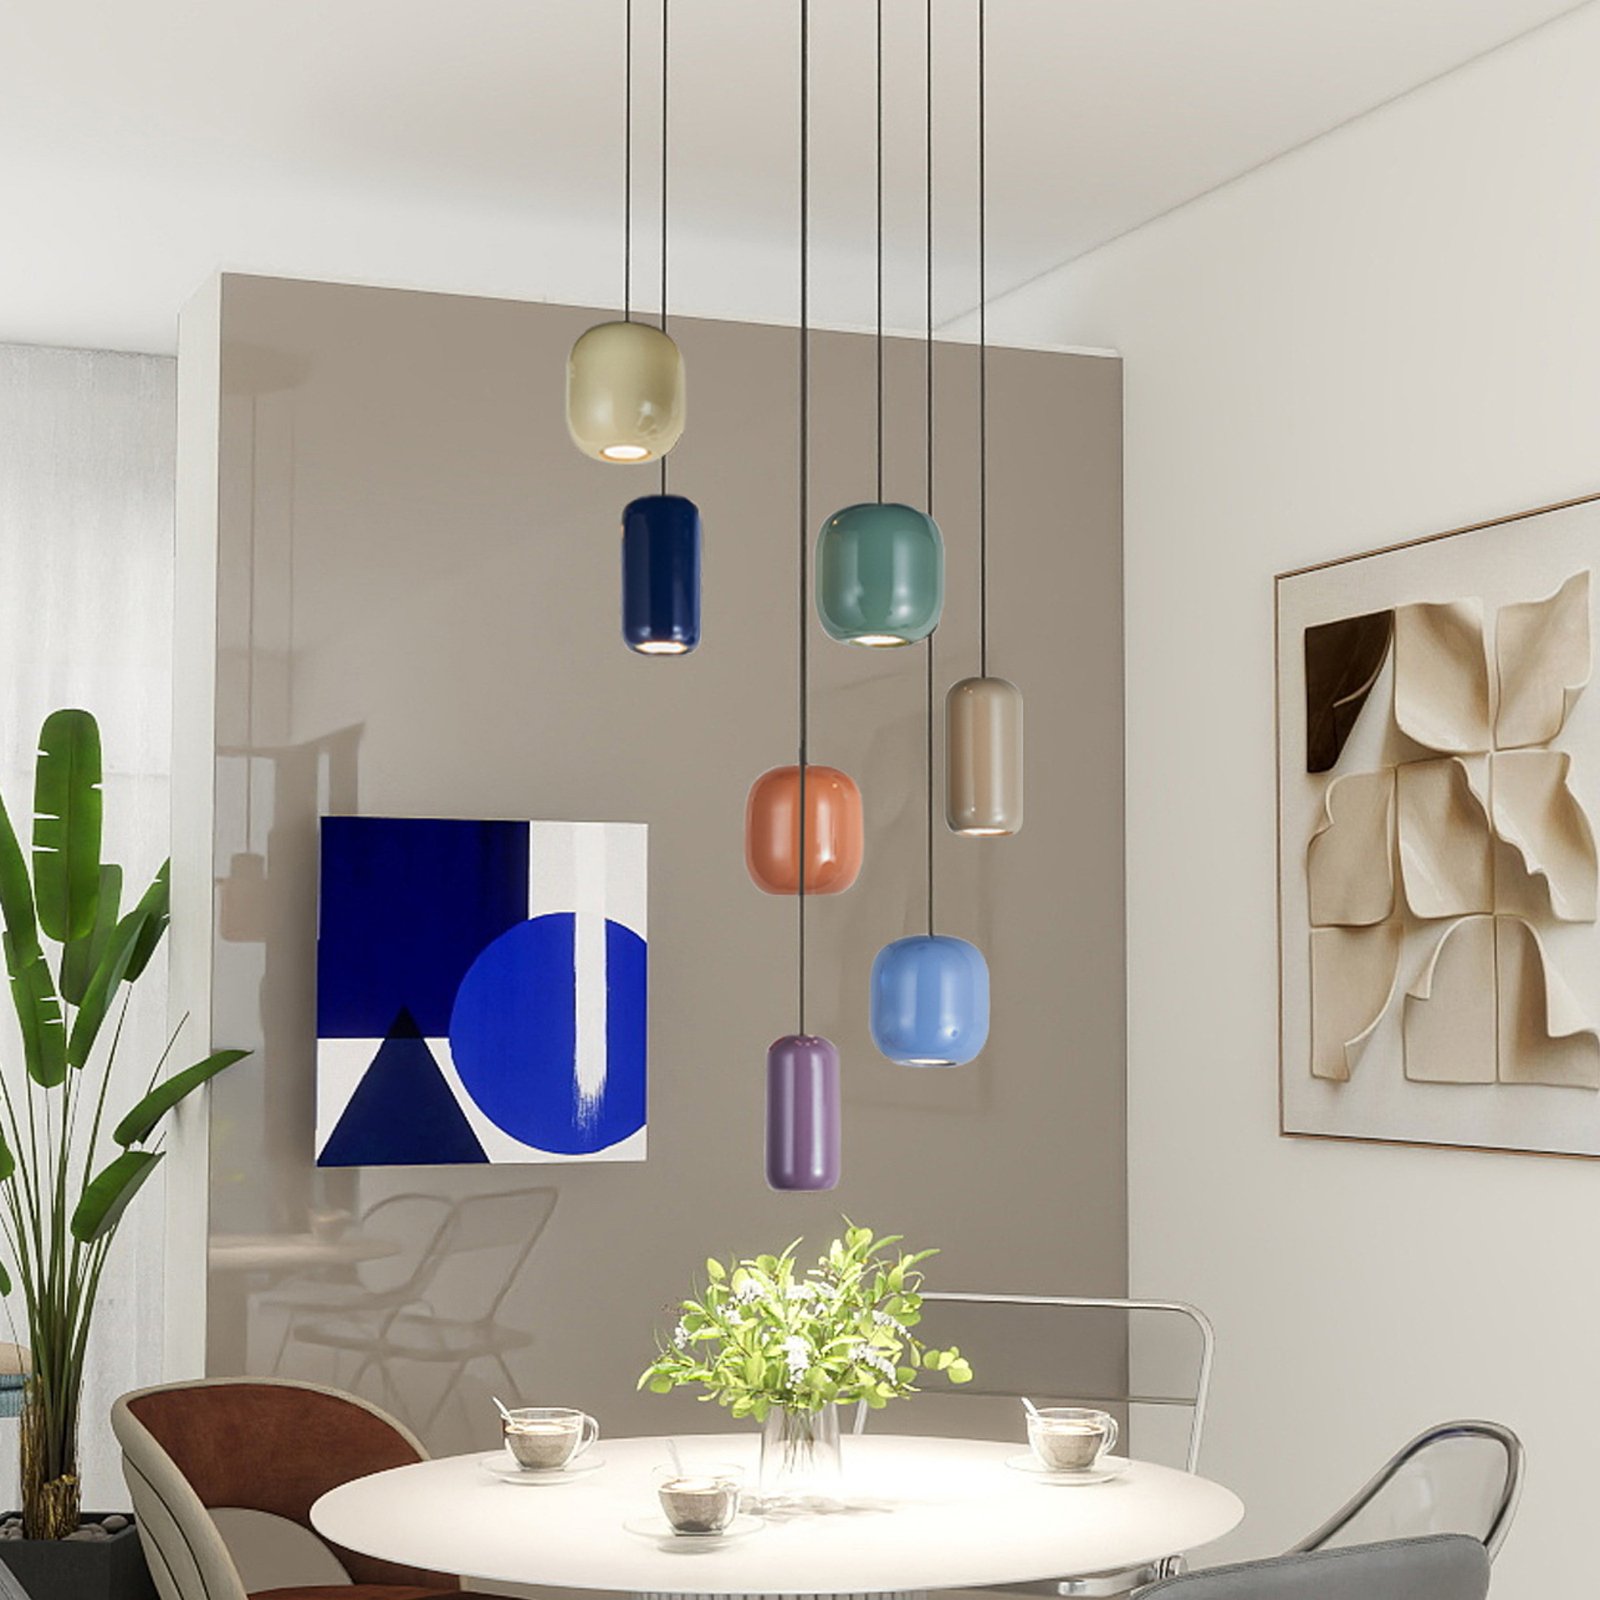 Lucande hanglamp Narion, rond, 7-lamps, kleurrijk, metaal